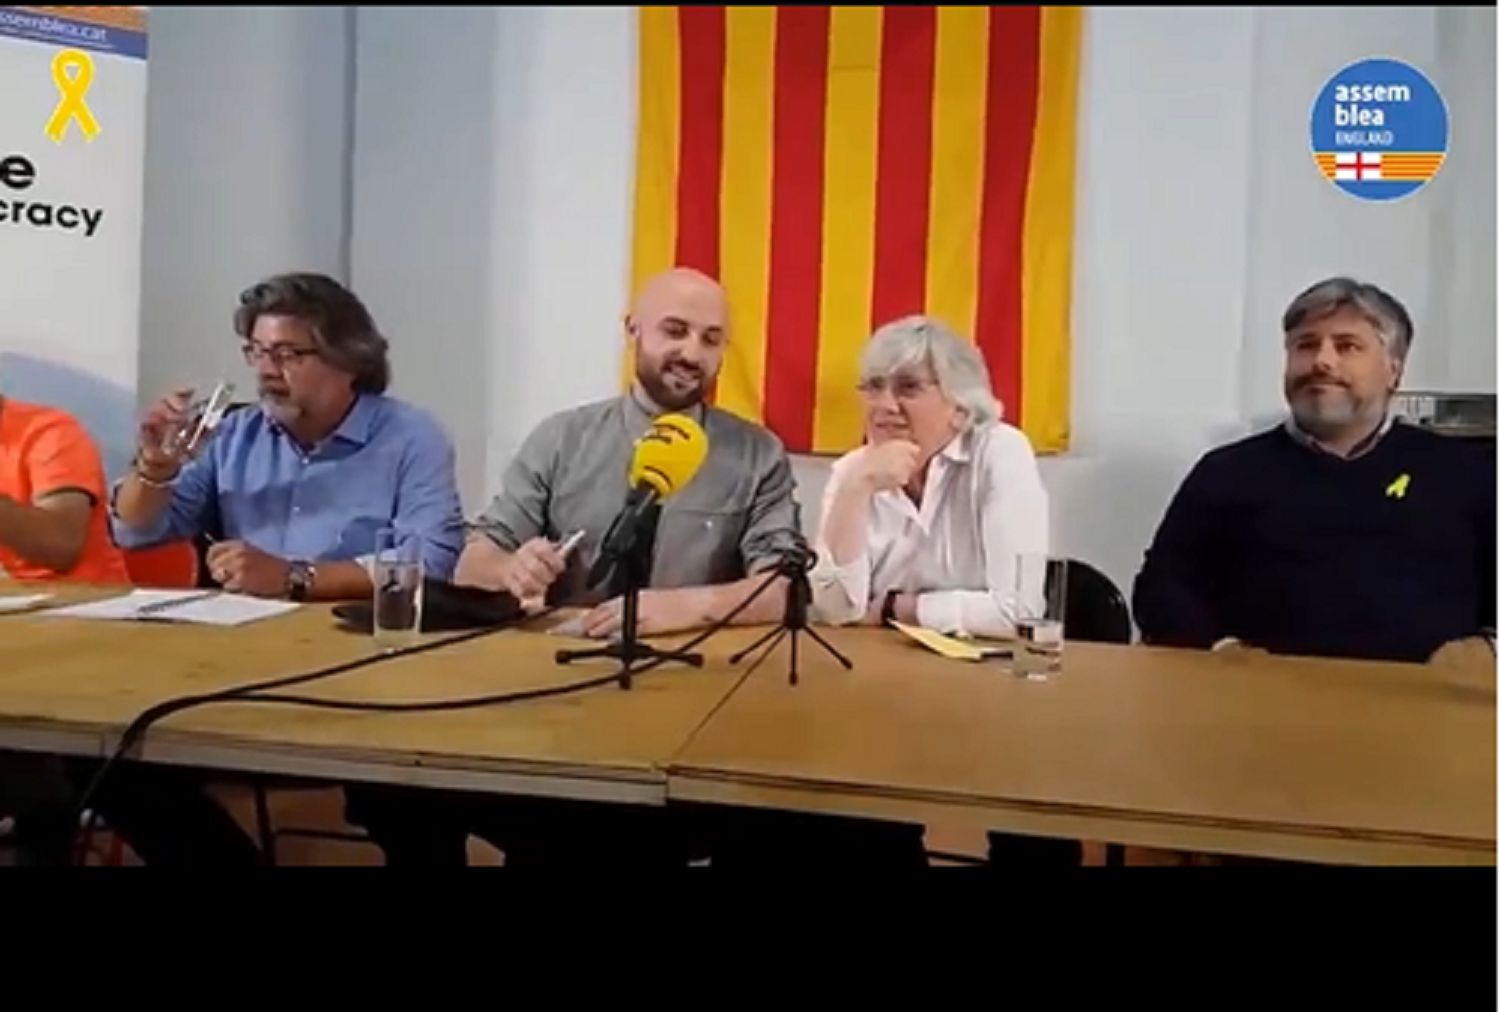 Clara Ponsatí reclama "nuevos liderazgos" en el independentismo